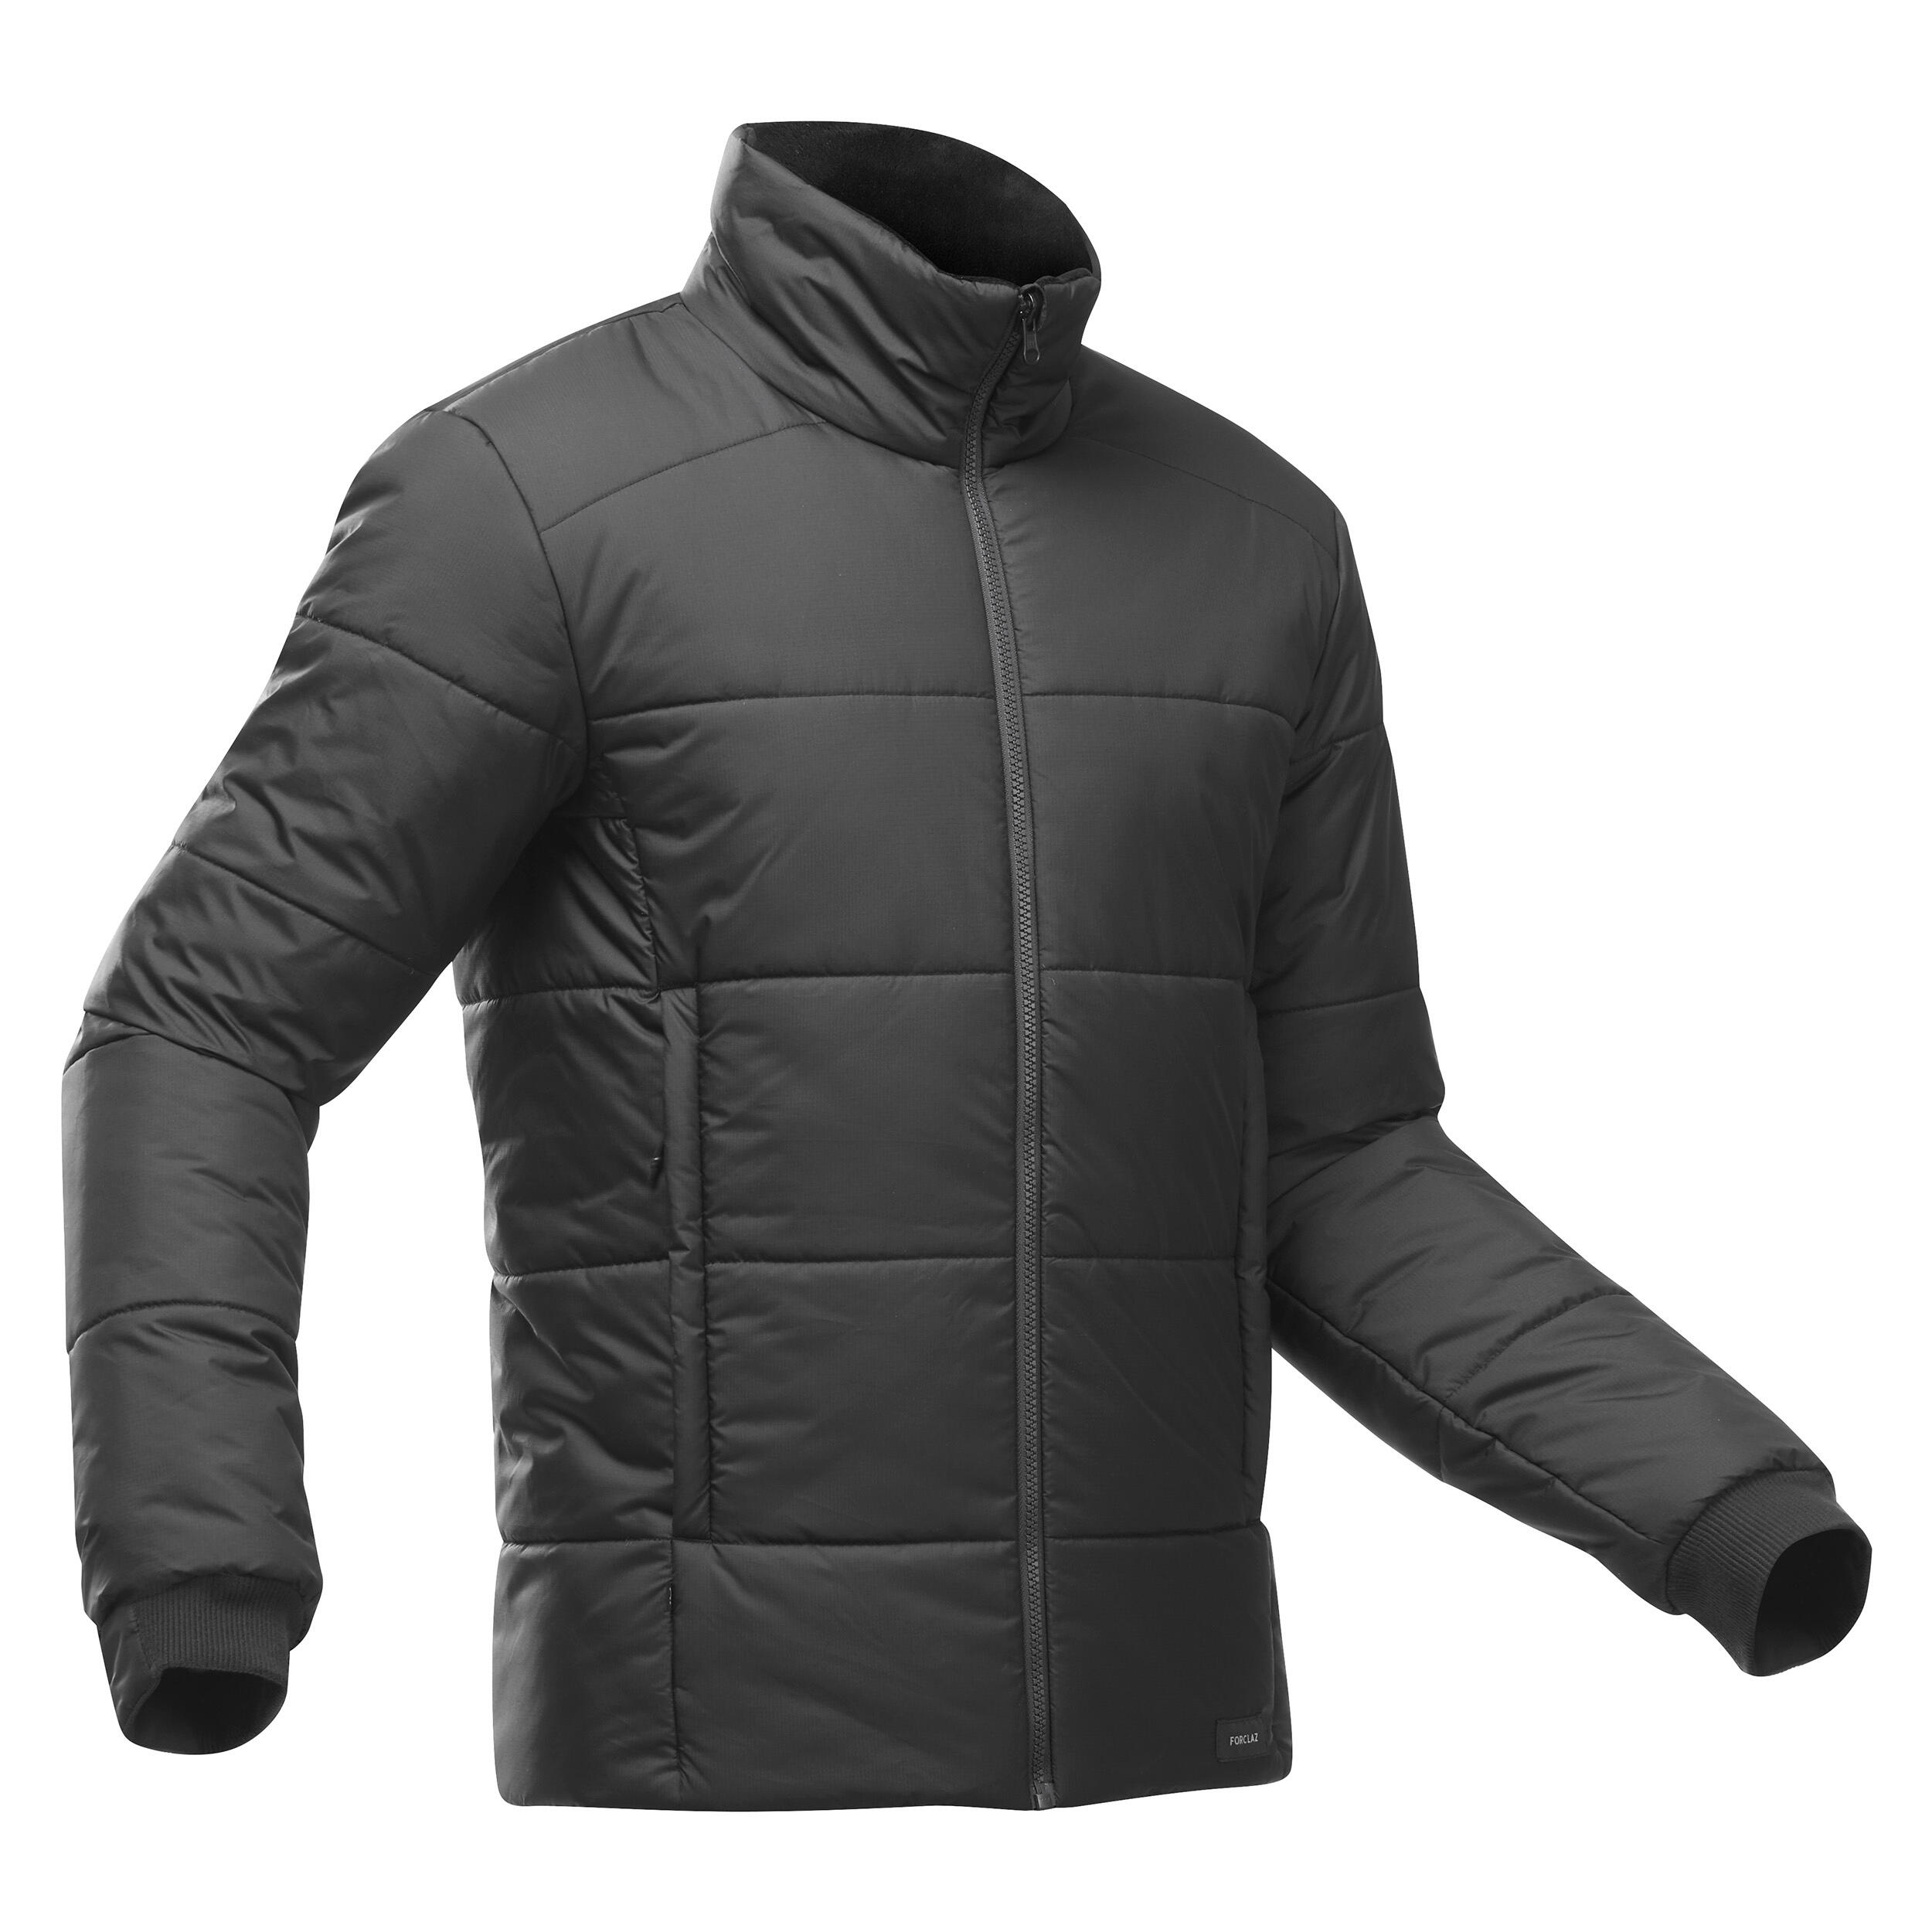 Men's 3-in-1 Waterproof Travel Trekking Jacket Travel 900 Warm -15°C - black  3/20